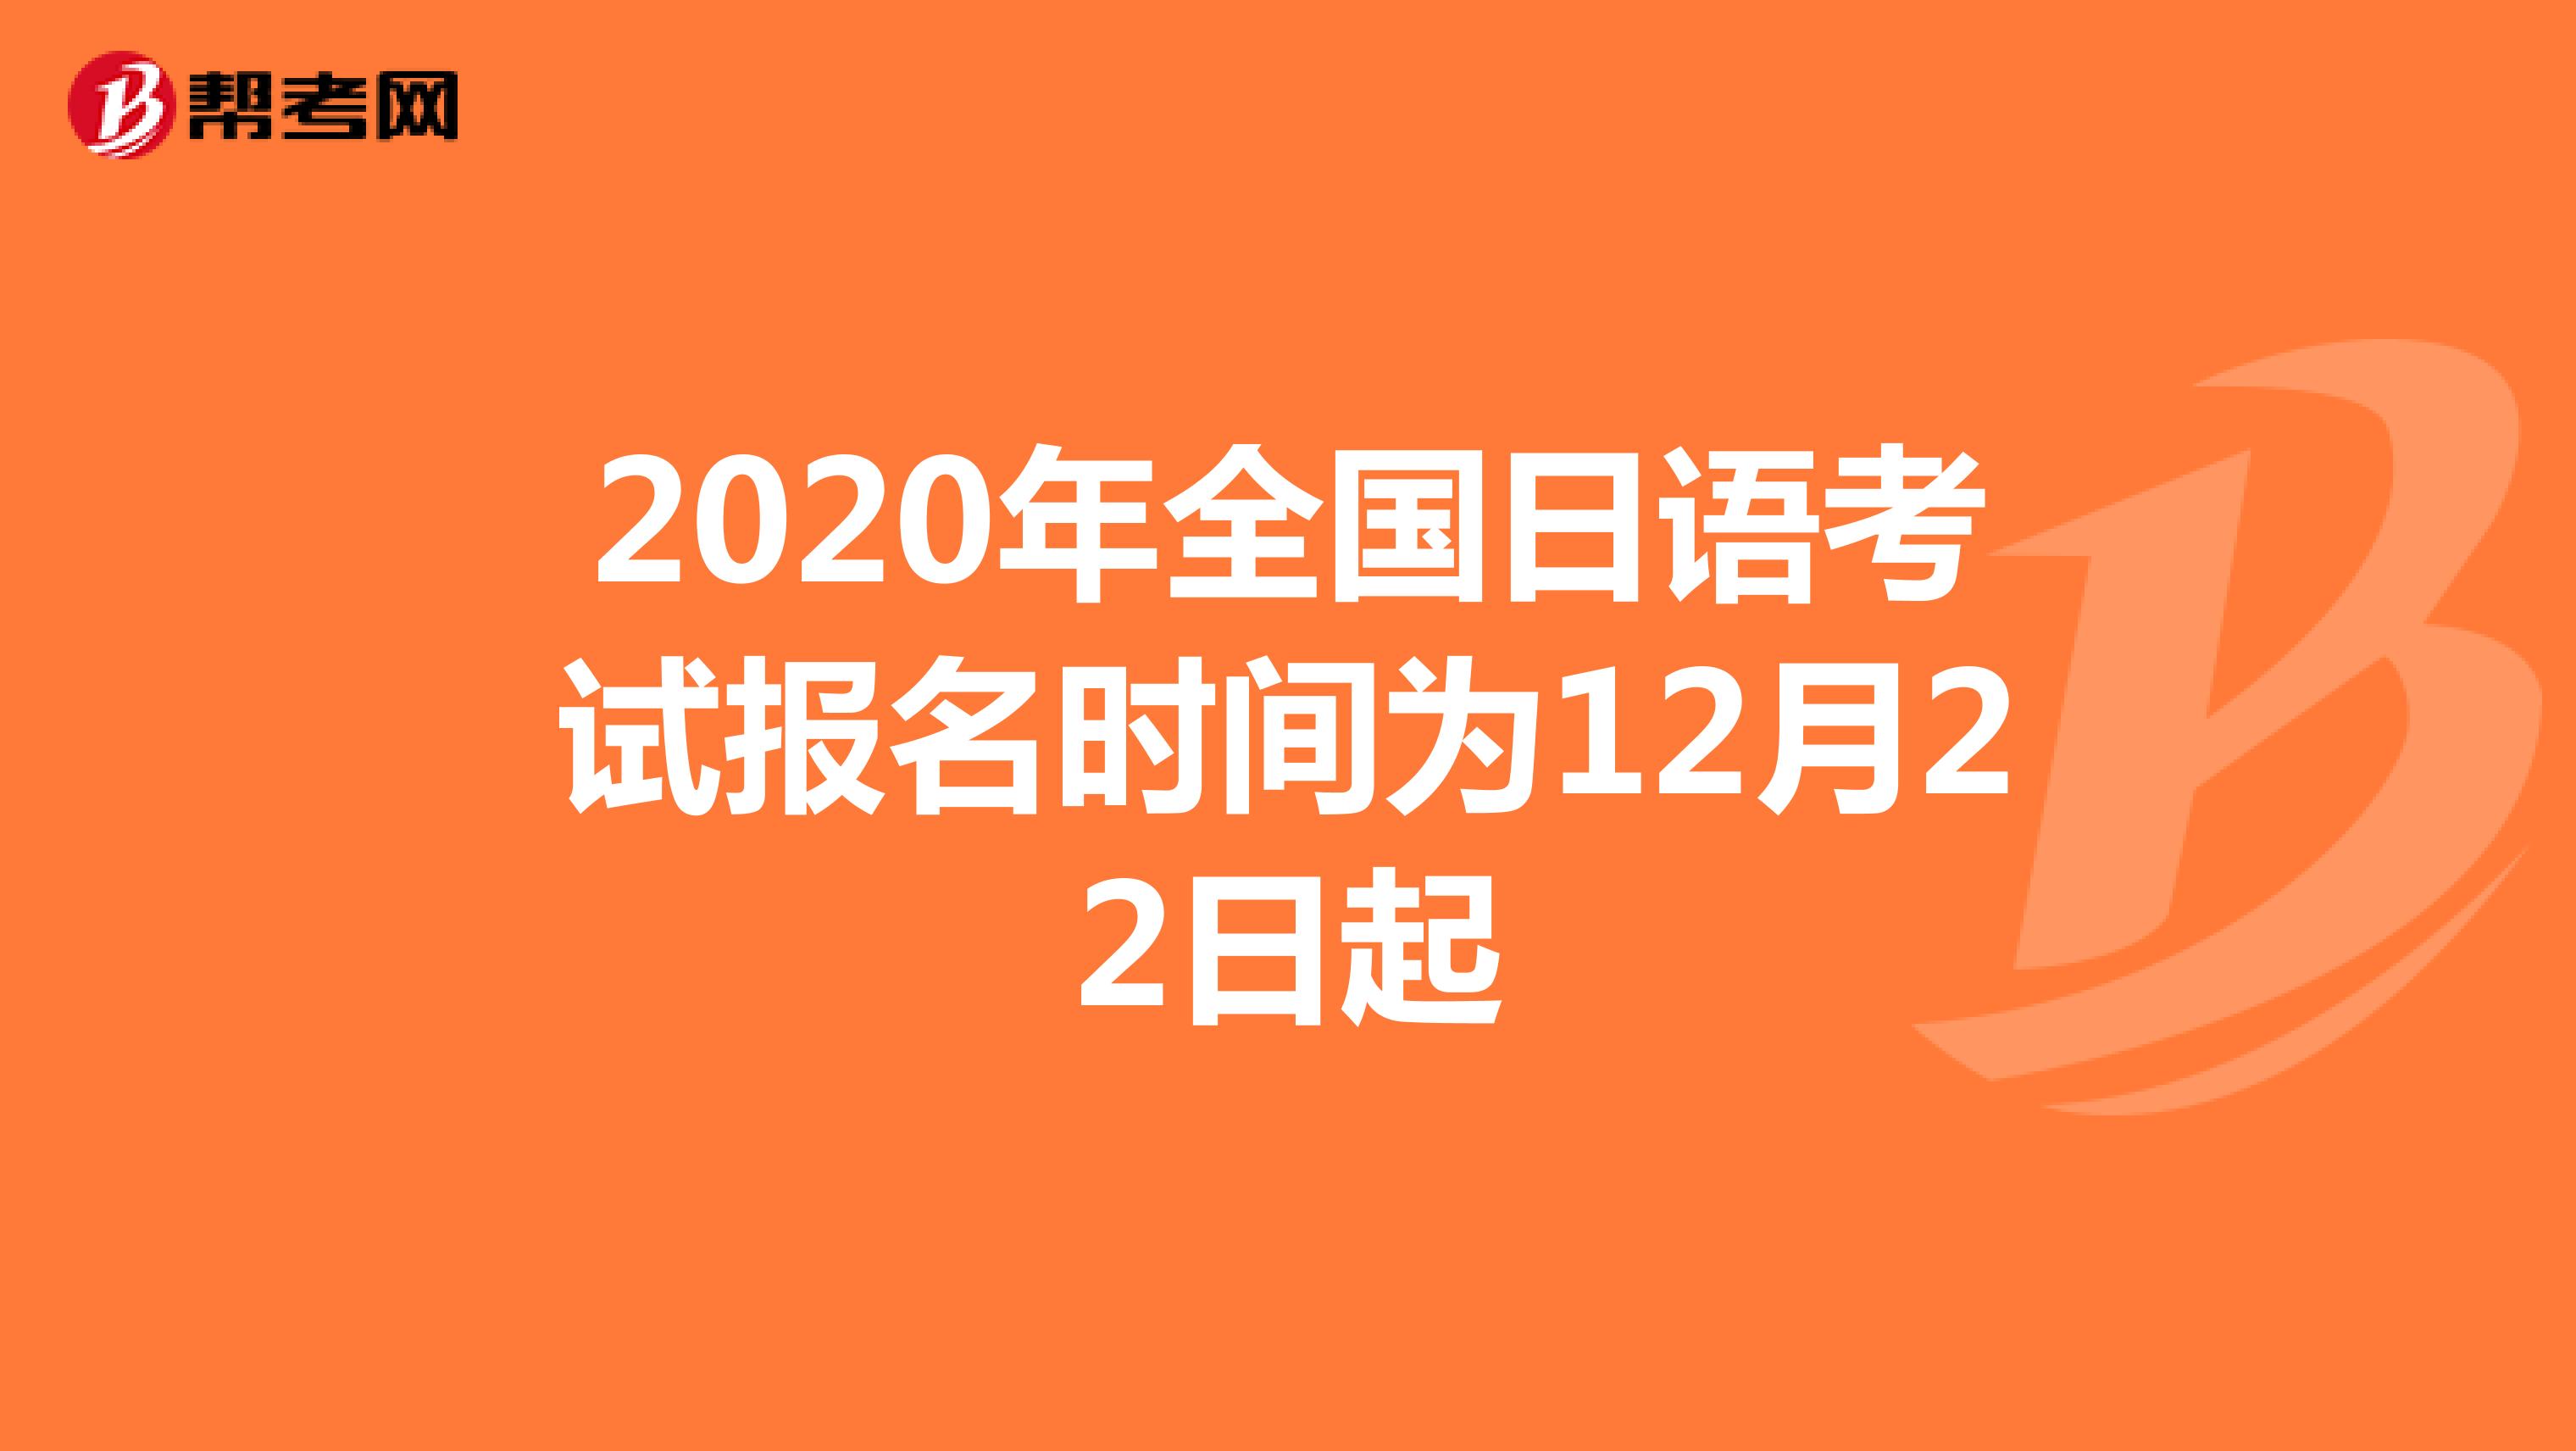 2020年全国日语考试报名时间为12月22日起